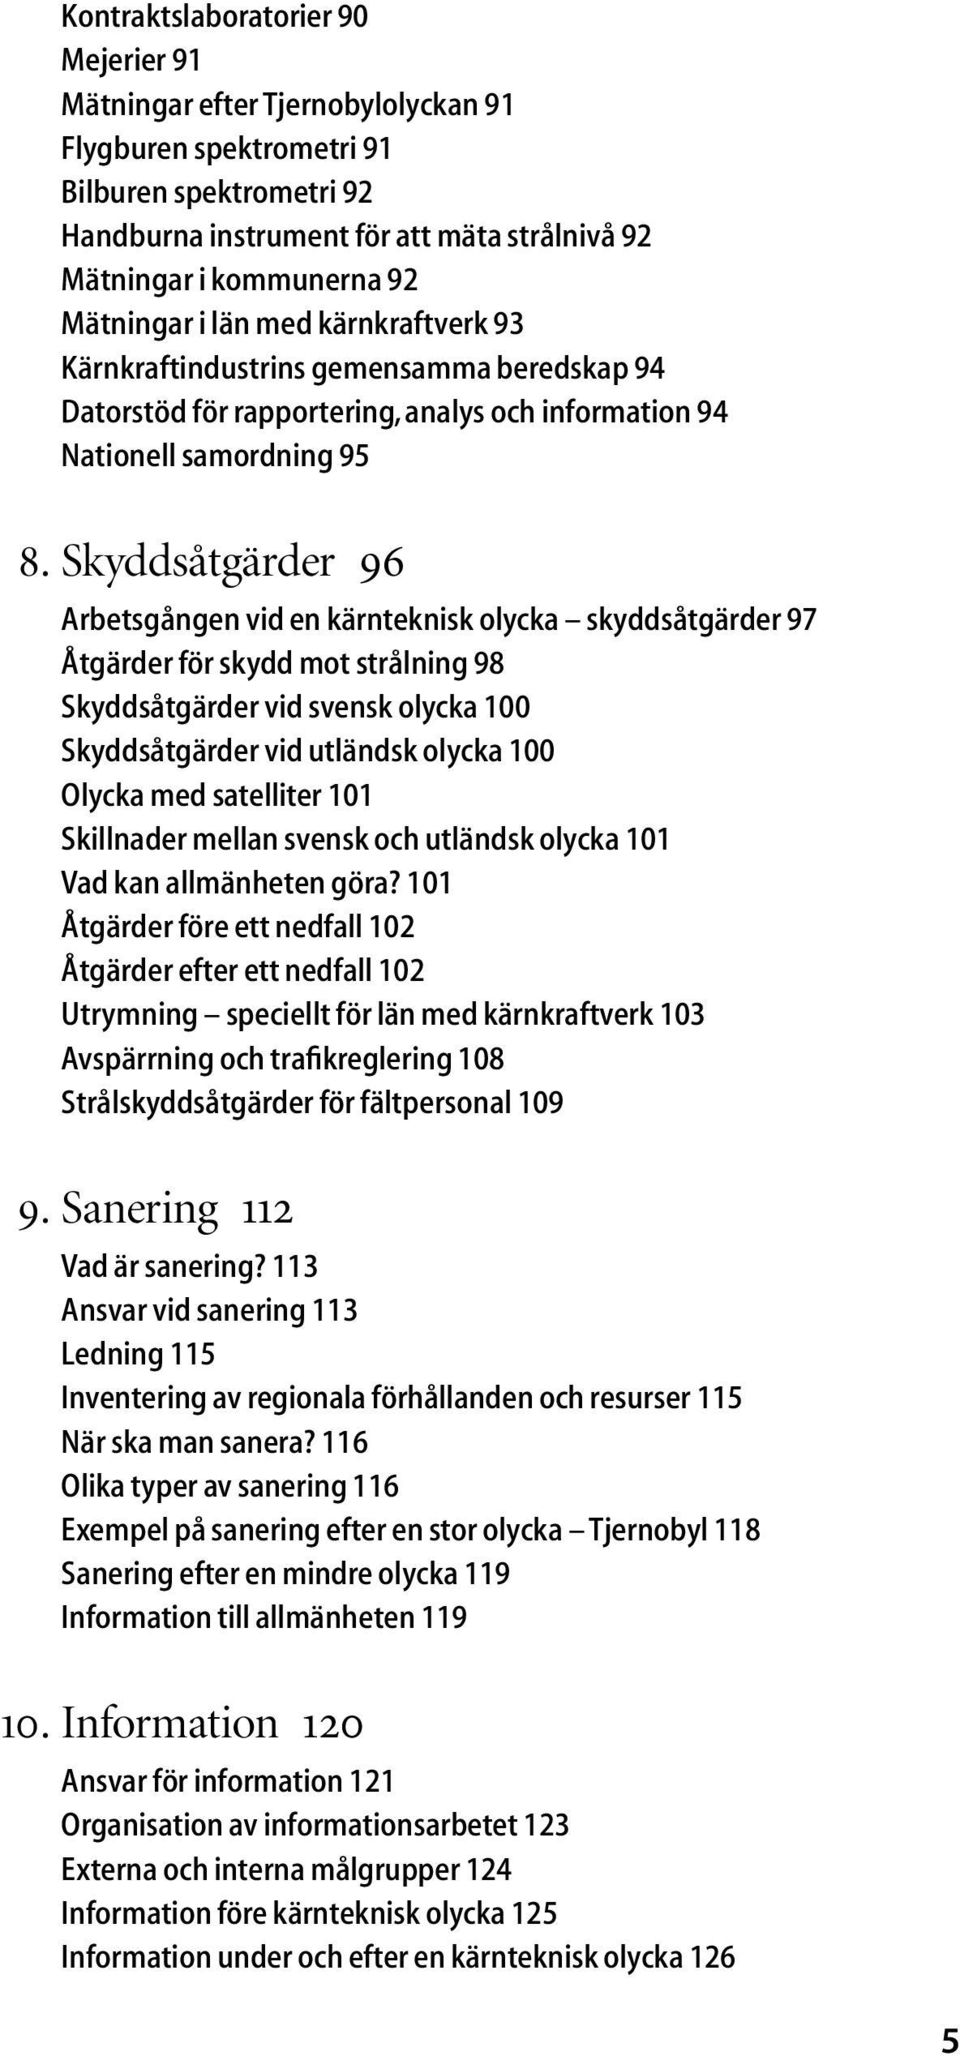 Skyddsåtgärder 96 Arbetsgången vid en kärnteknisk olycka skyddsåtgärder 97 Åtgärder för skydd mot strålning 98 Skyddsåtgärder vid svensk olycka 100 Skyddsåtgärder vid utländsk olycka 100 Olycka med